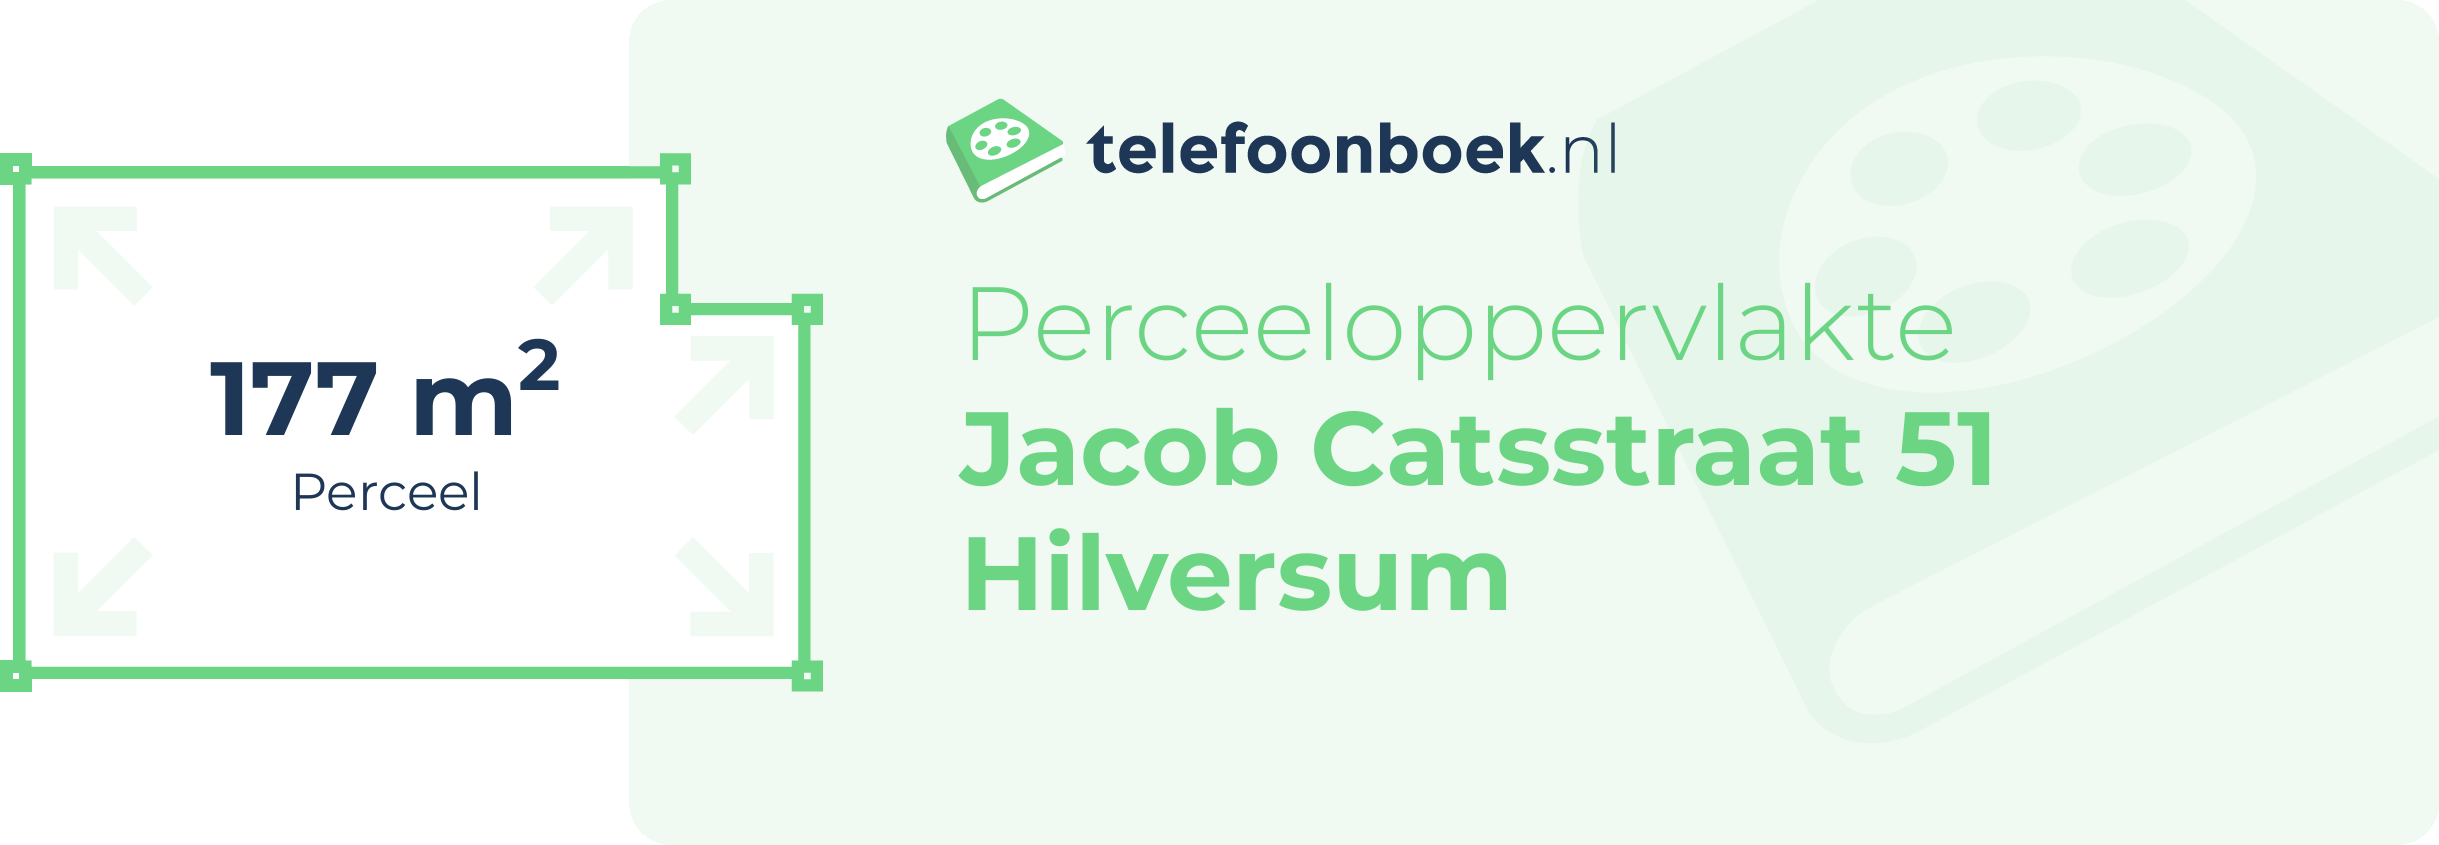 Perceeloppervlakte Jacob Catsstraat 51 Hilversum